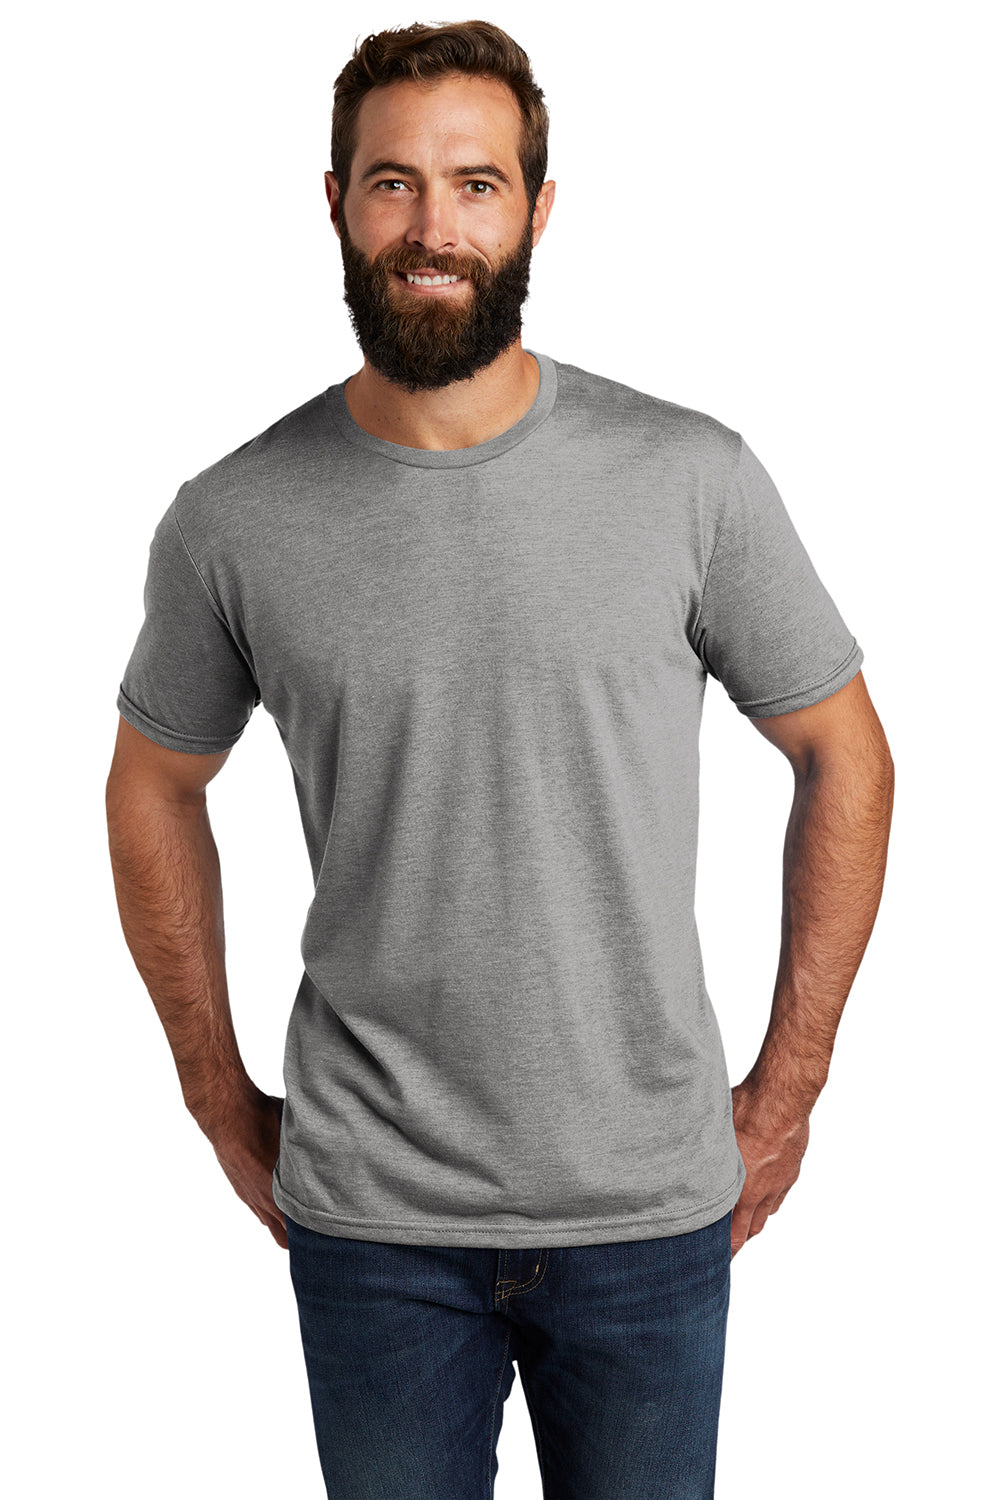 Allmade AL2004 Mens Short Sleeve Crewneck T-Shirt Aluminum Grey Model Front